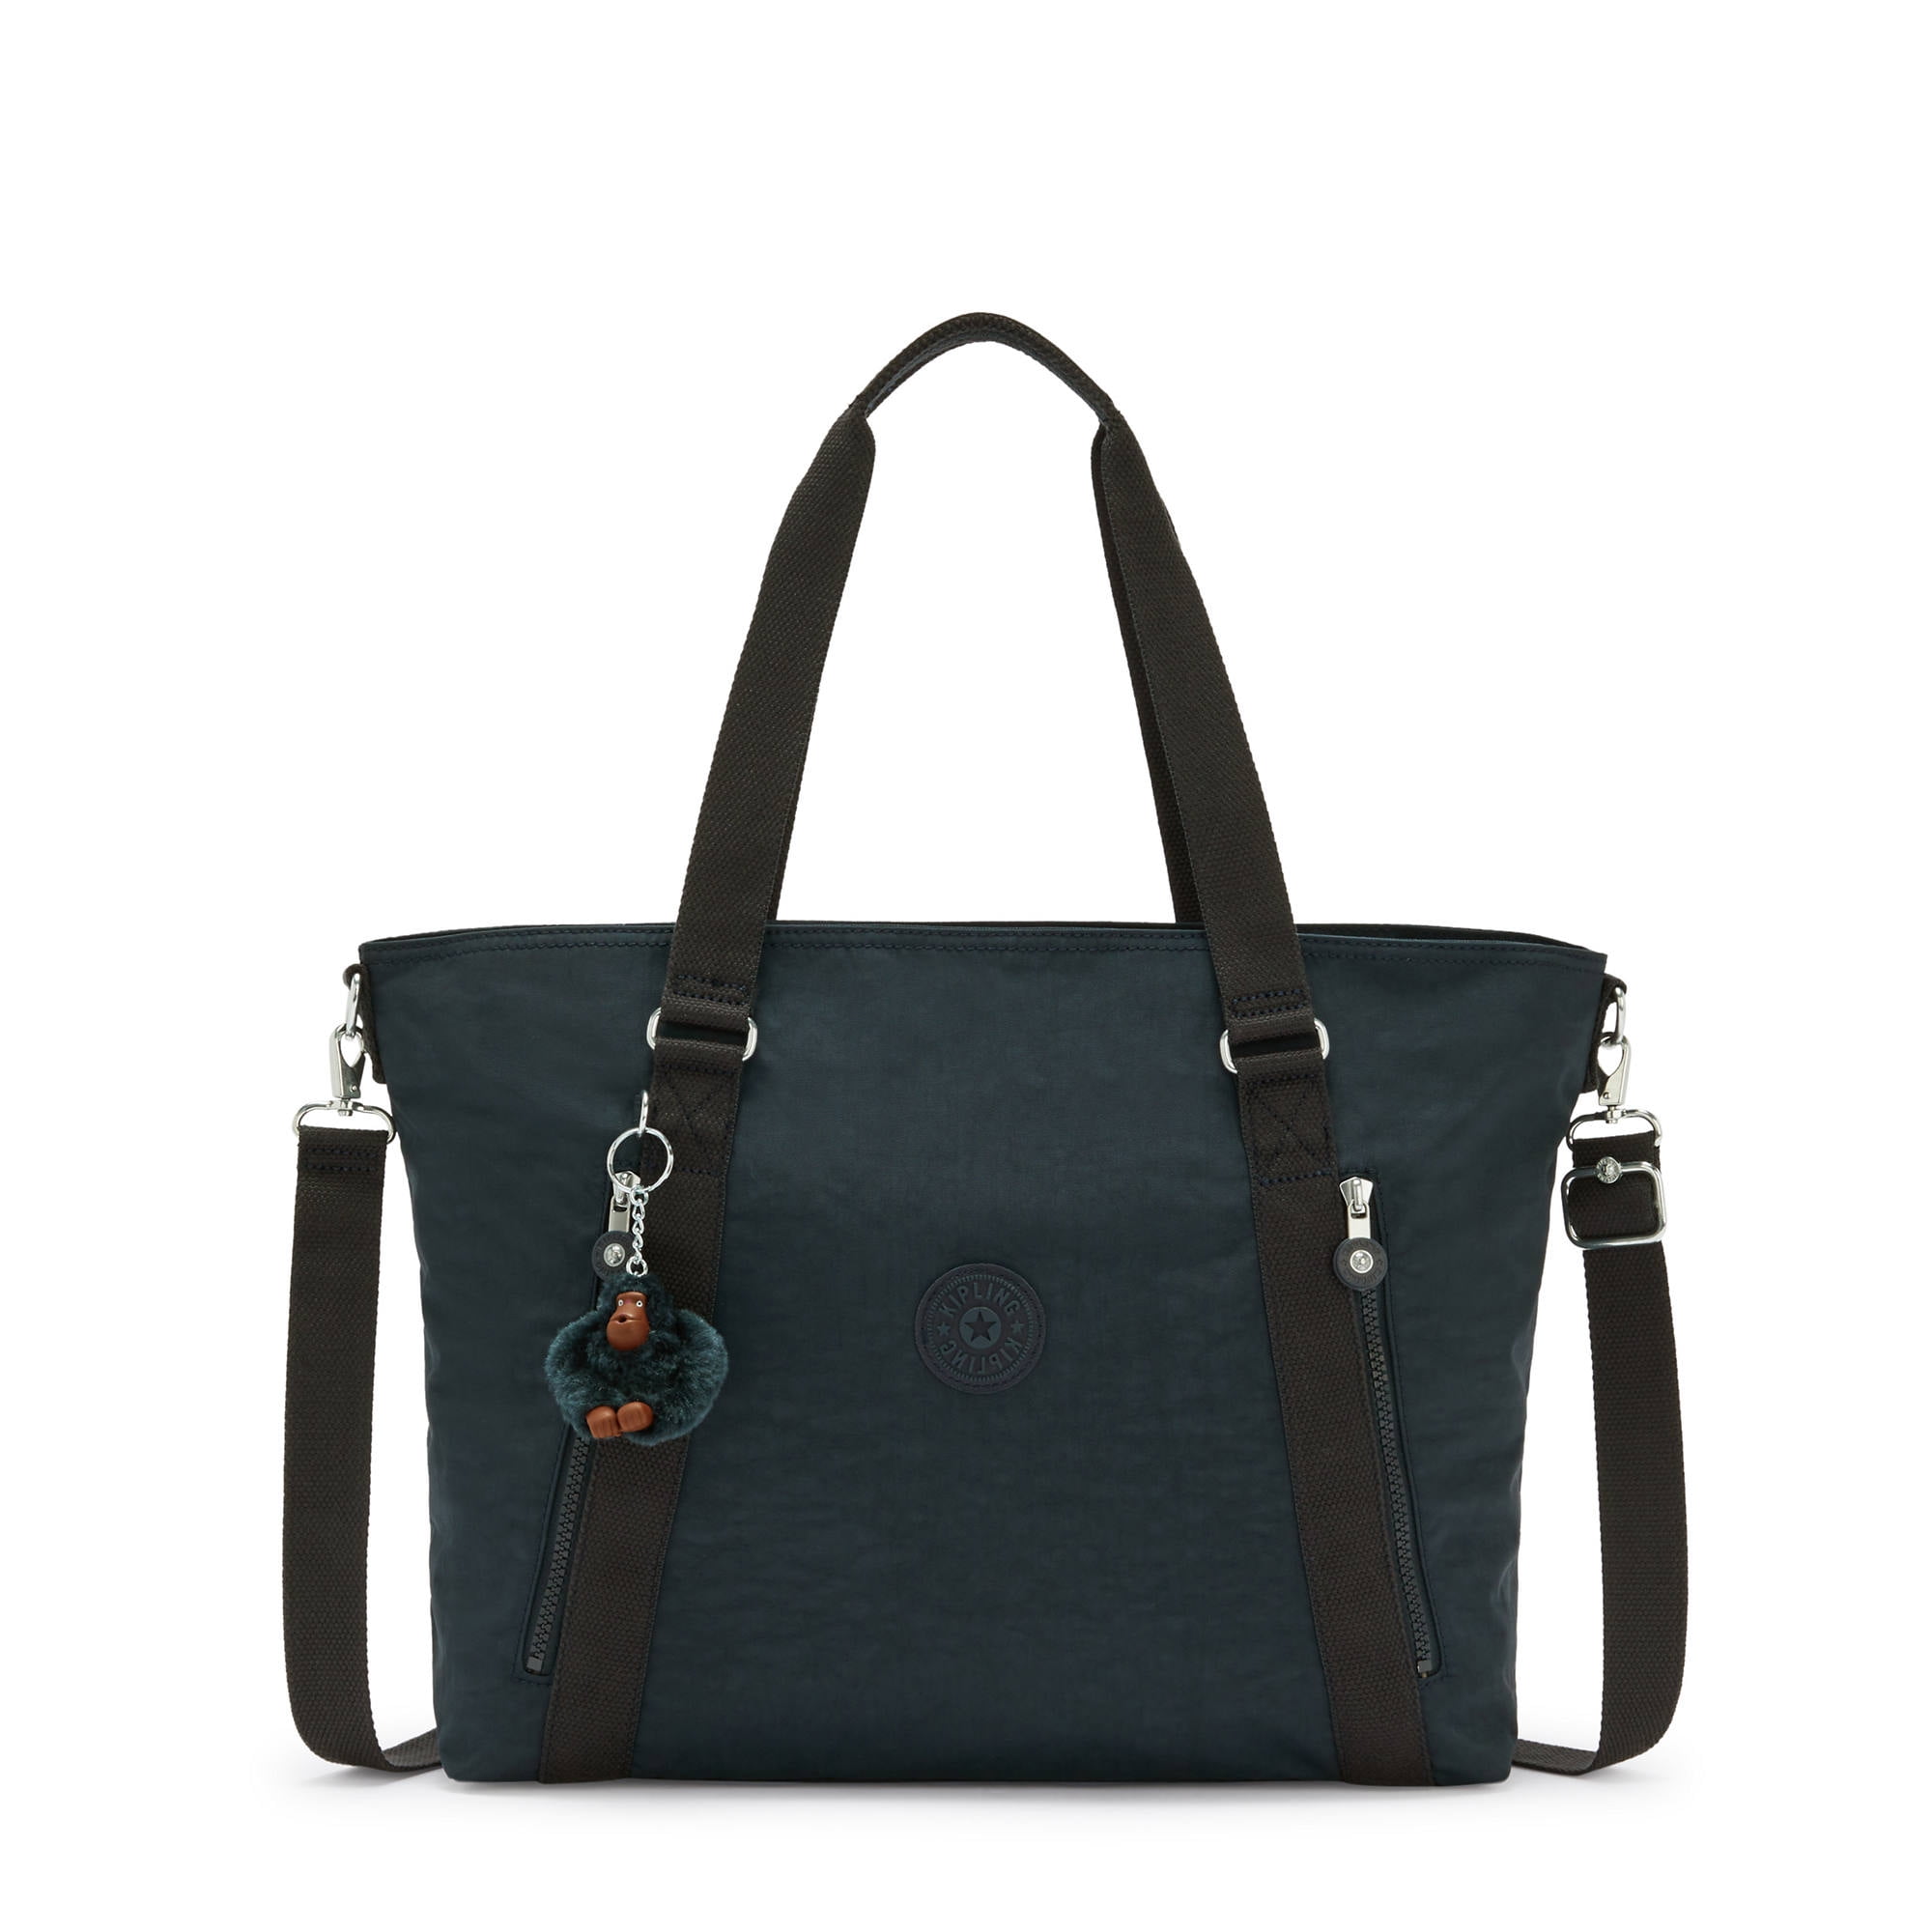 Kipling Women's Skyler Tote Bag Adjustable Strap - Walmart.com